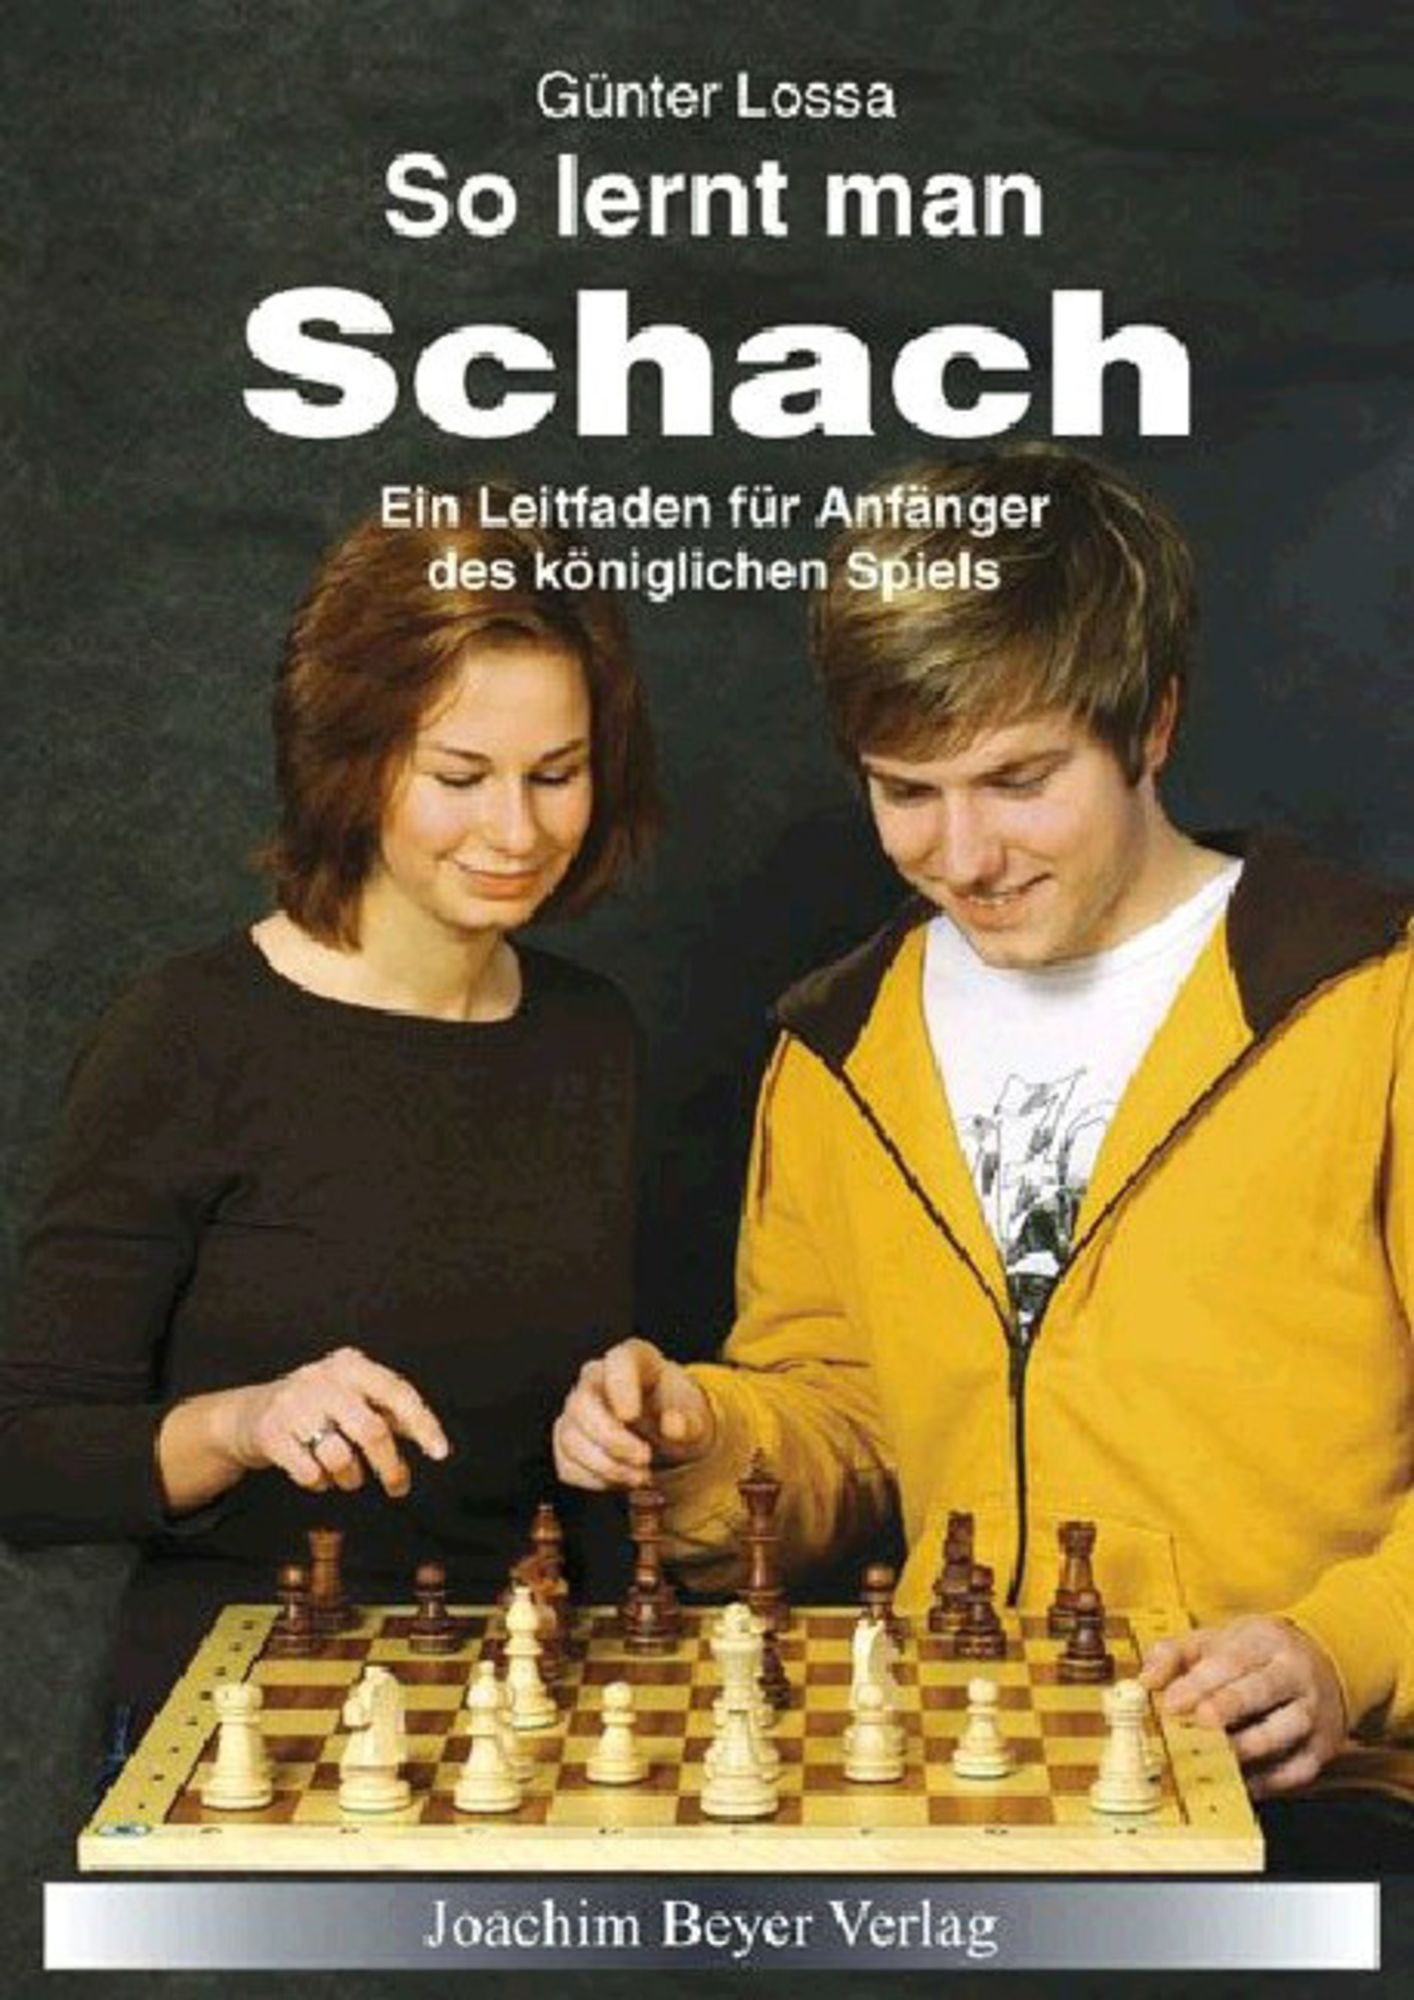 So lernt man Schach von Günter Lossa - Buch